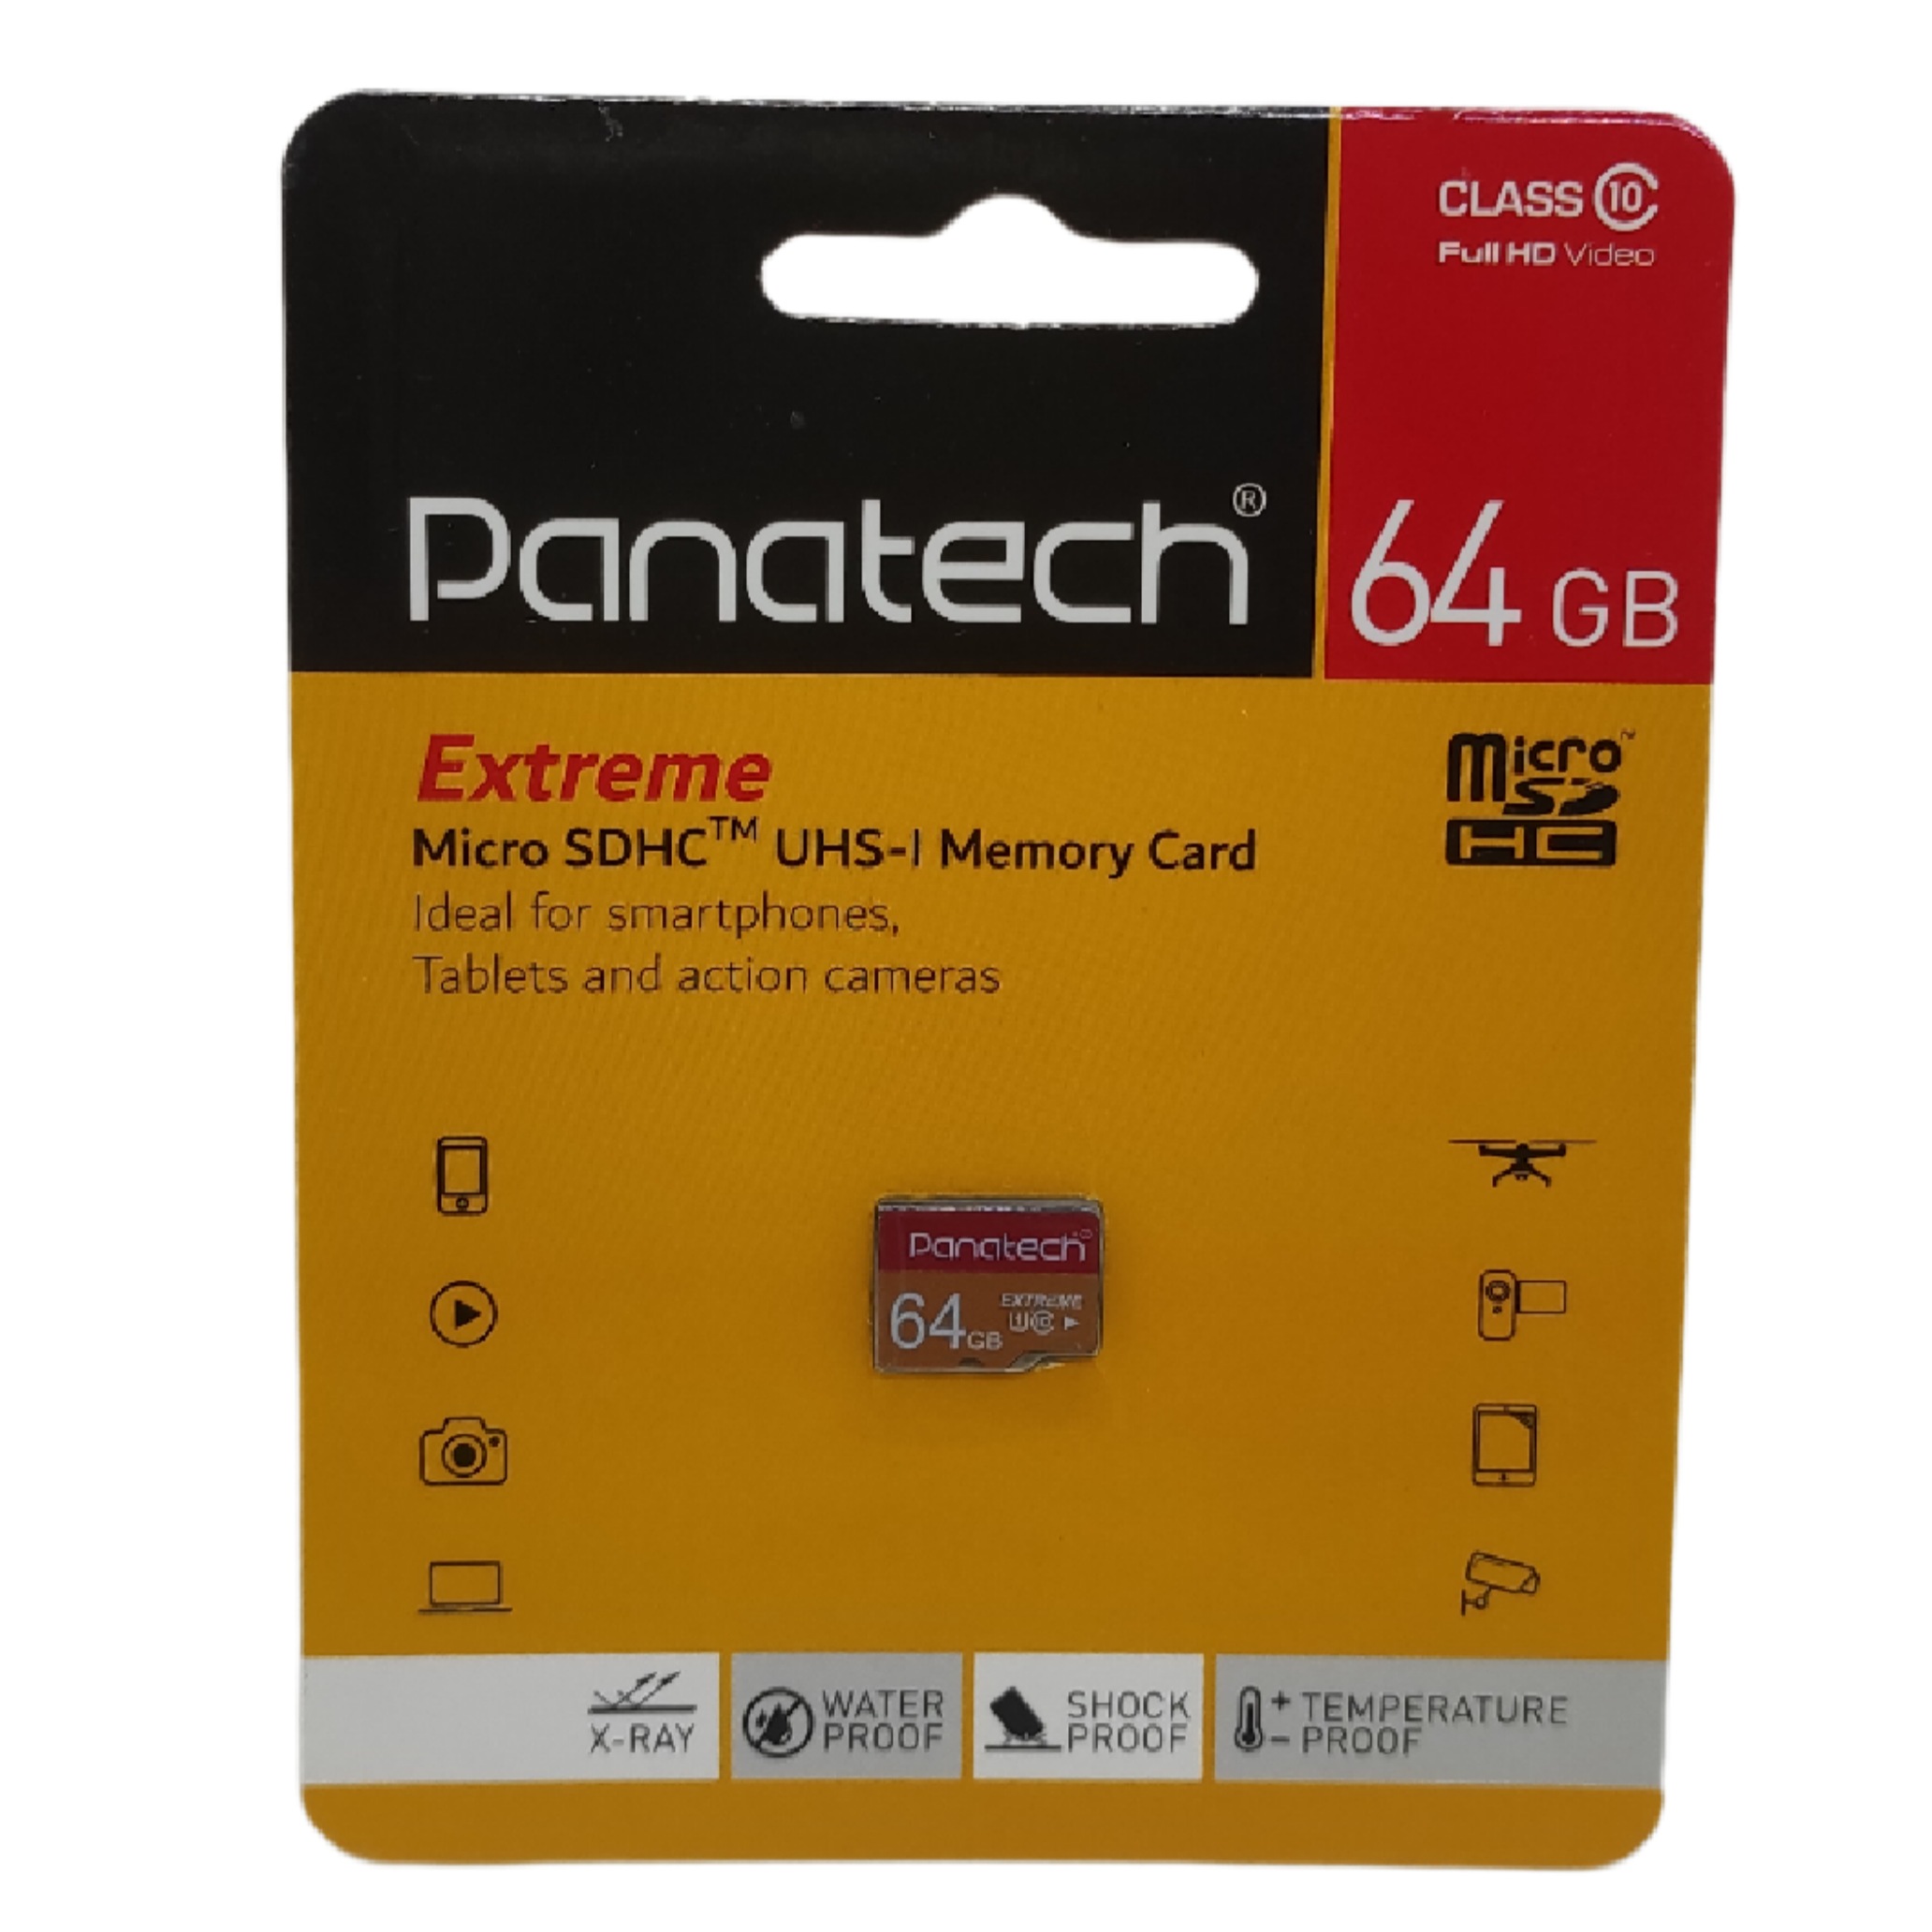 کارت حافظه microSDHC پاناتچ مدل Final 600X کلاس 10 استاندارد UHS-I U1 سرعت 90MBps ظرفیت 64 گیگابایت